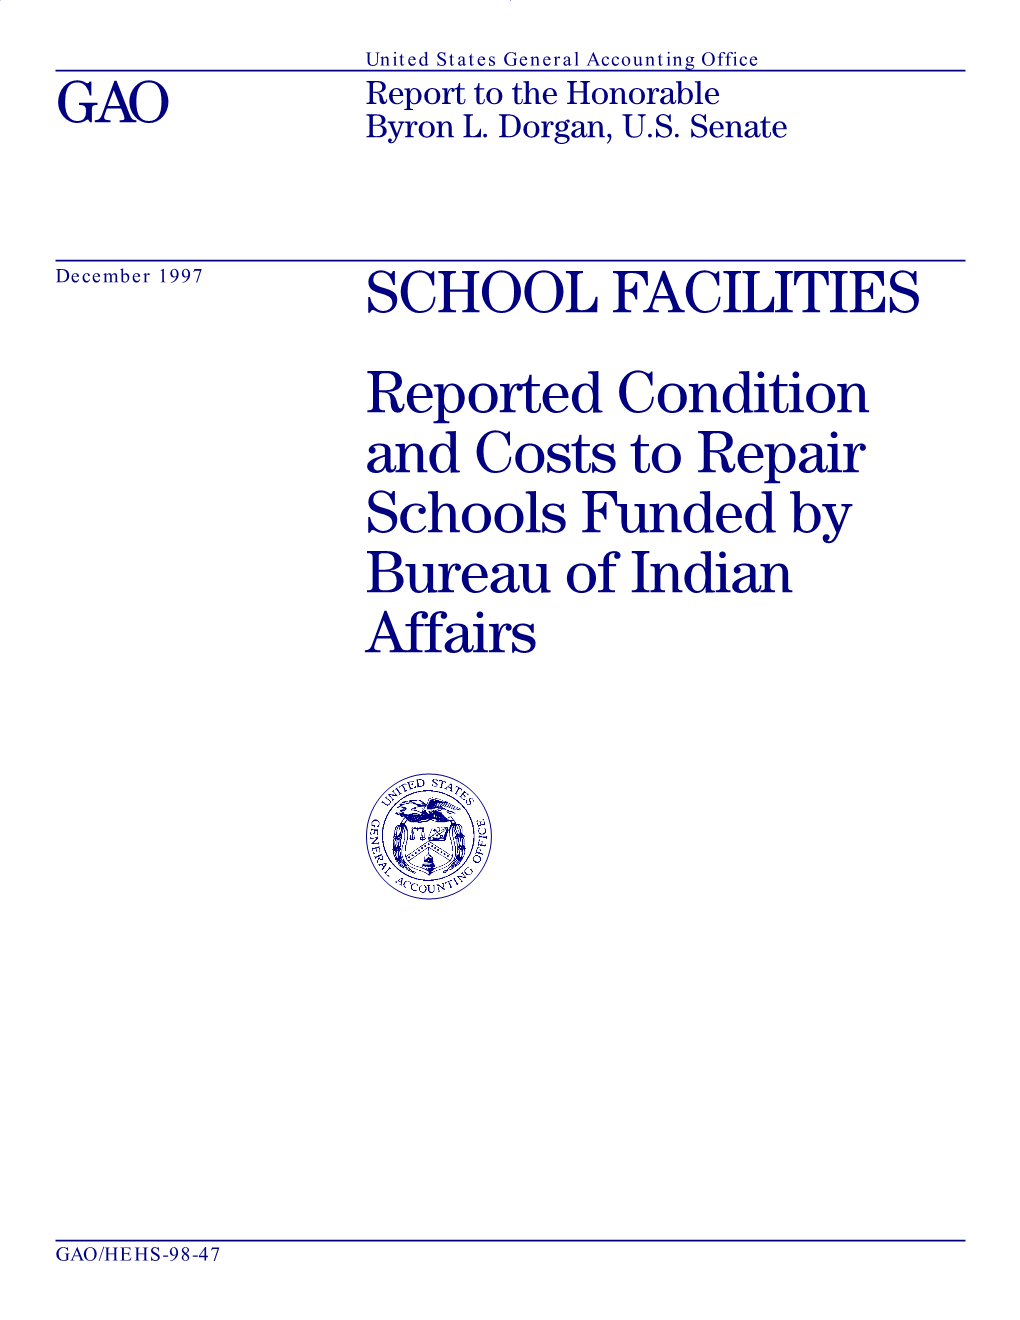 HEHS-98-47 School Facilities